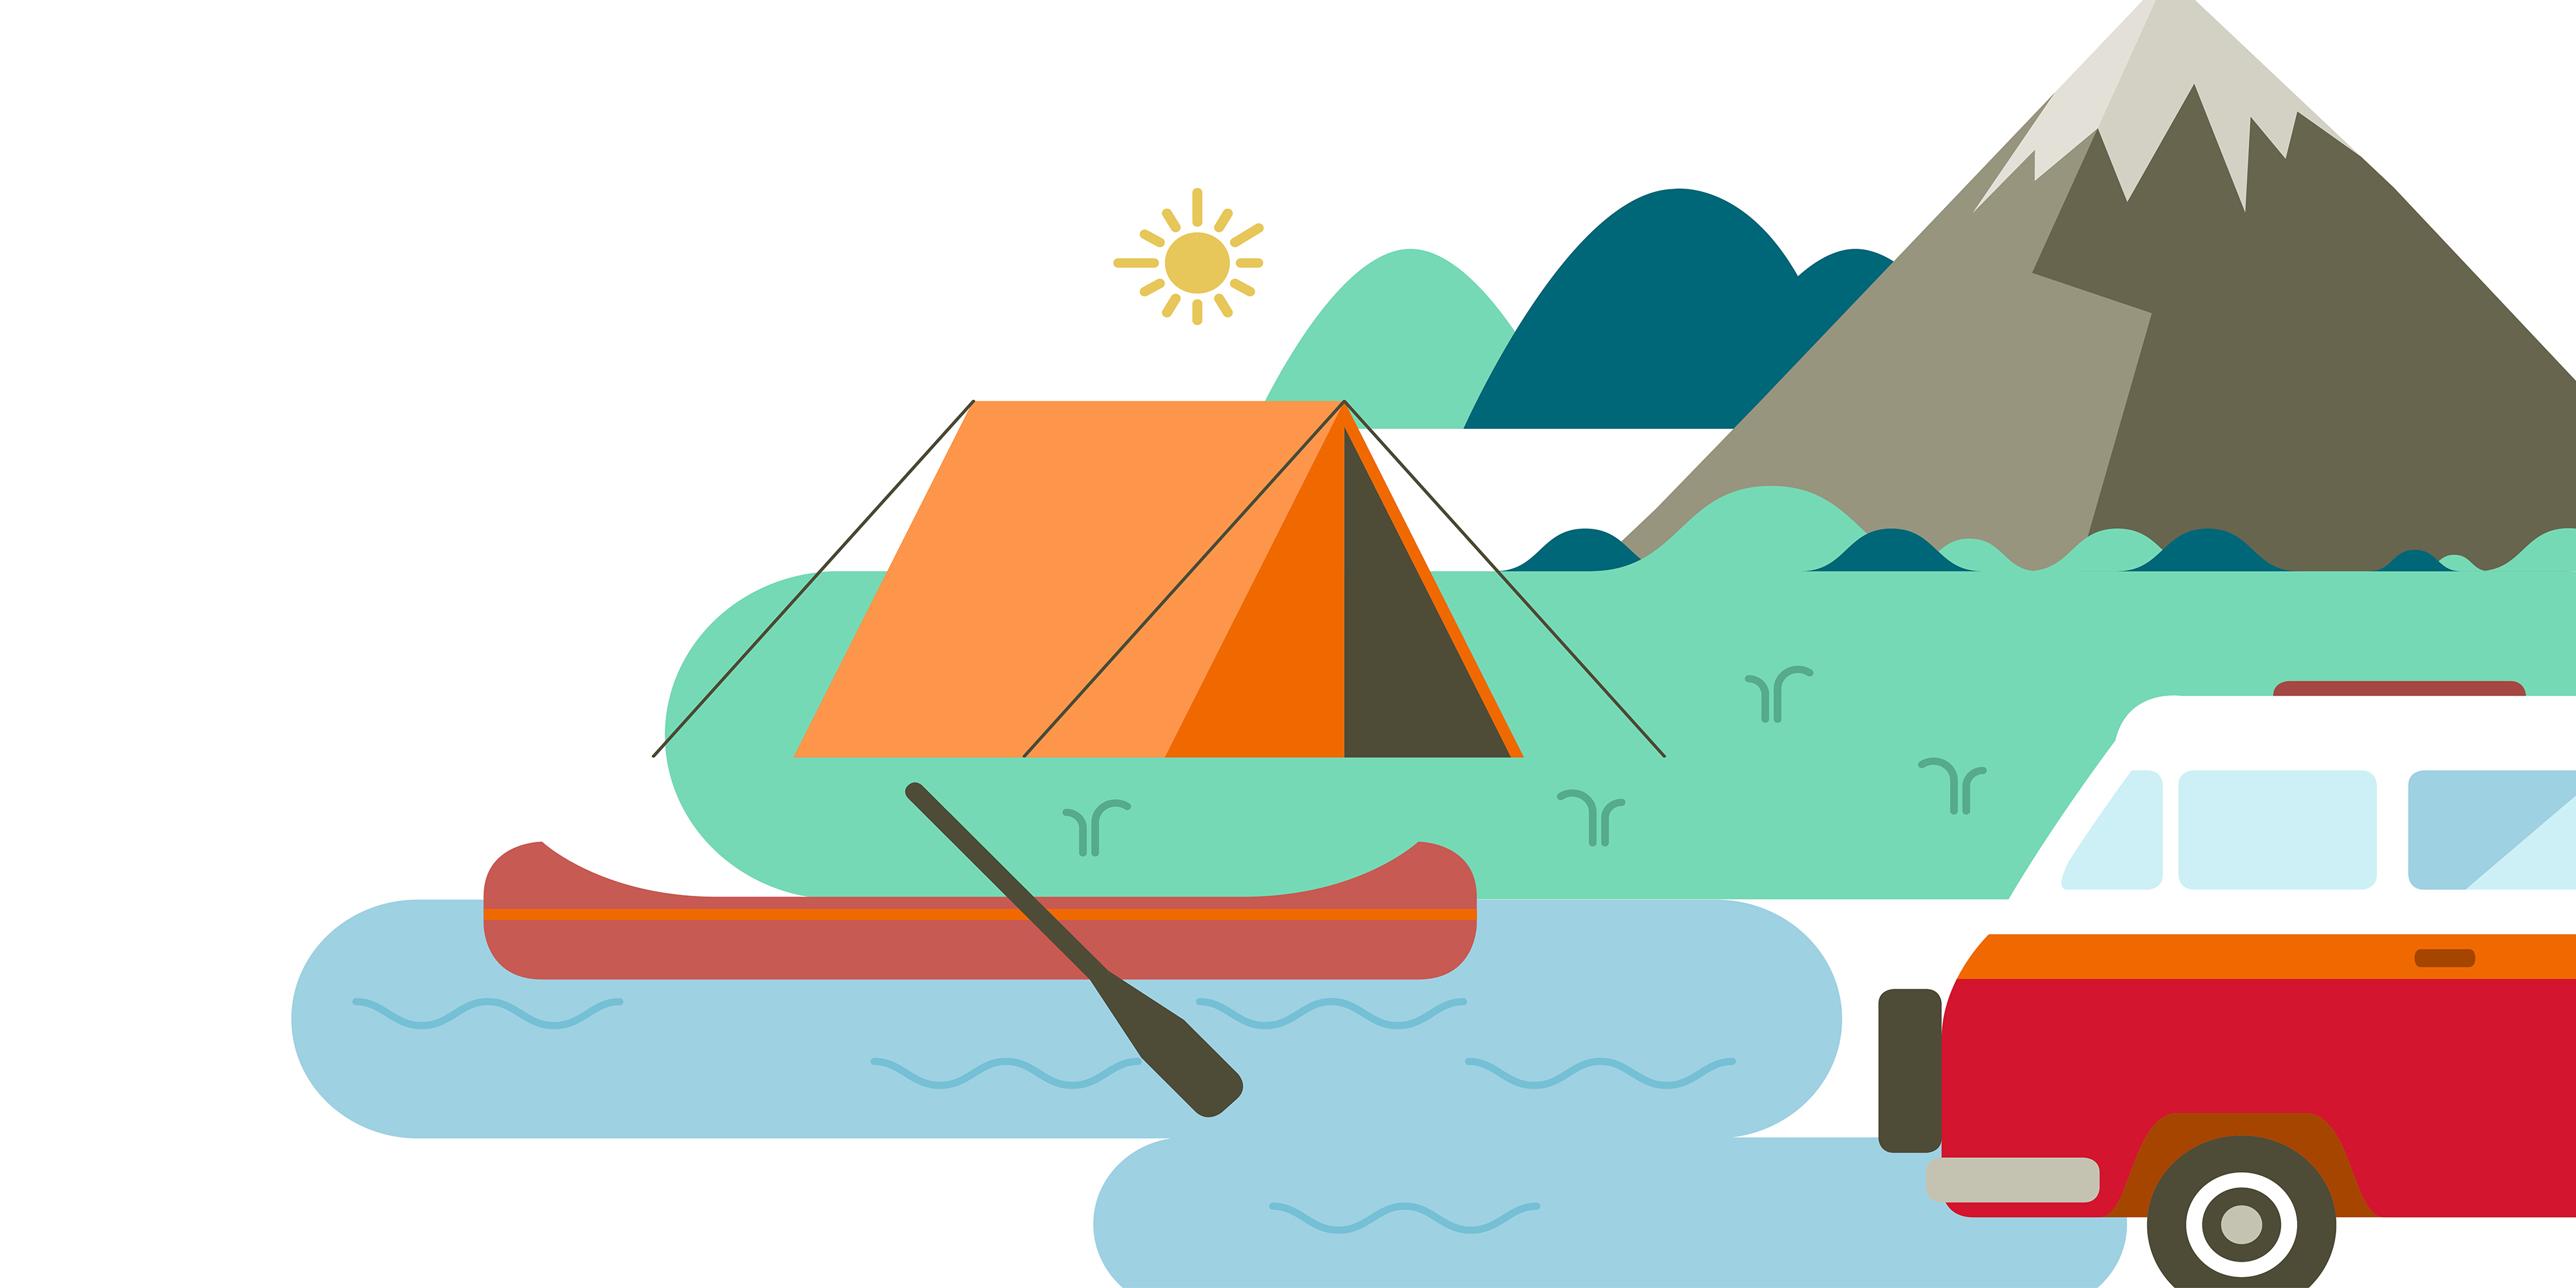 Illustrationen eines Zeltes, eines Kanus im Fluss, eines Berges